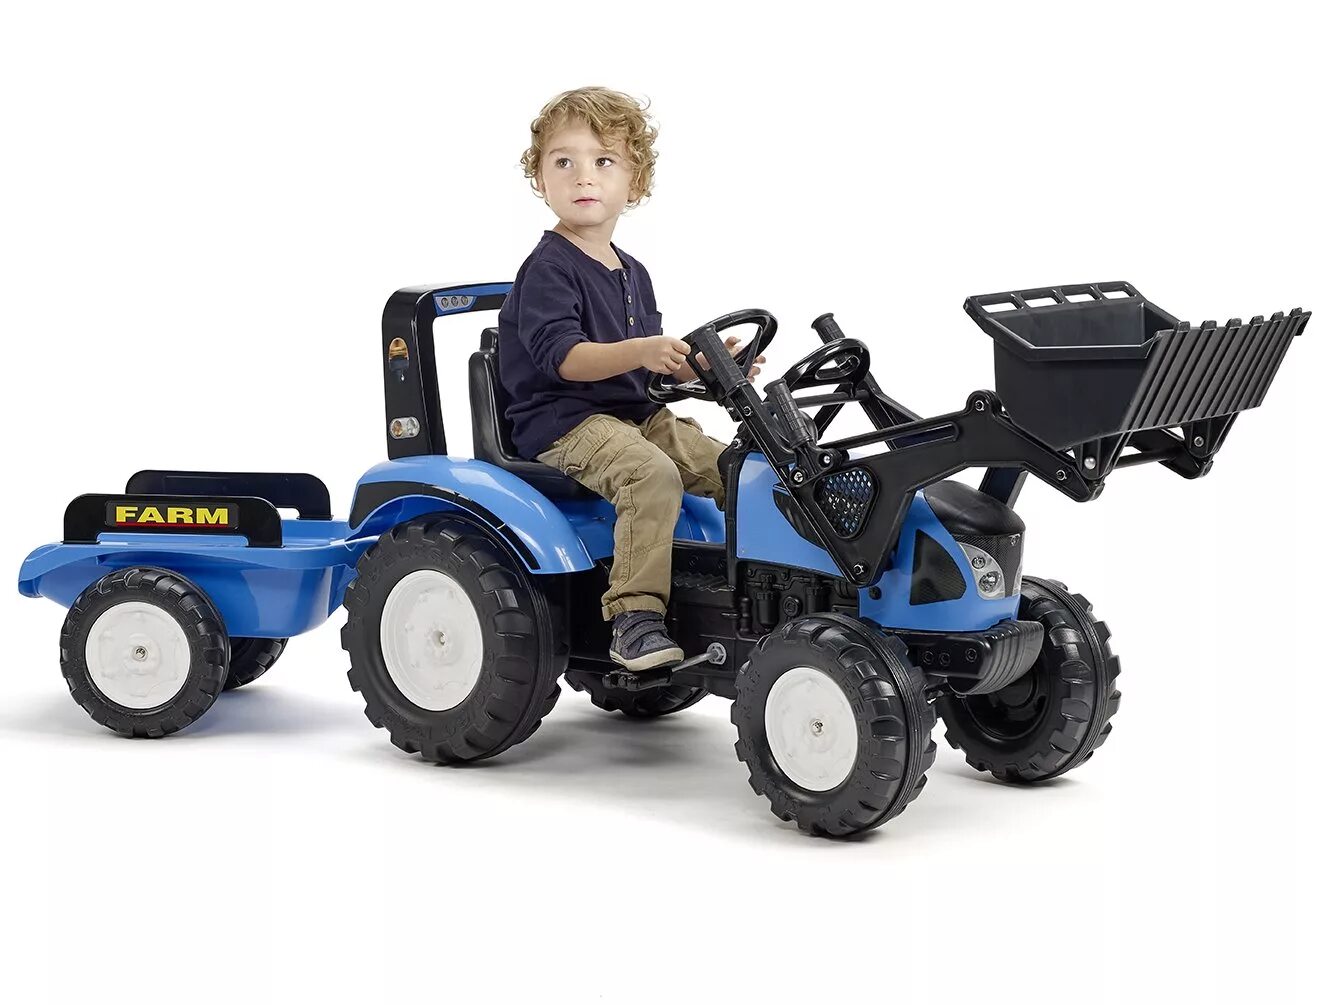 Детские трактора для детей. Супериор трактор педальный. Трактор педальный Ranchero. Синий трактор с педалями и прицепом. Трактор большой для детей с педалями.